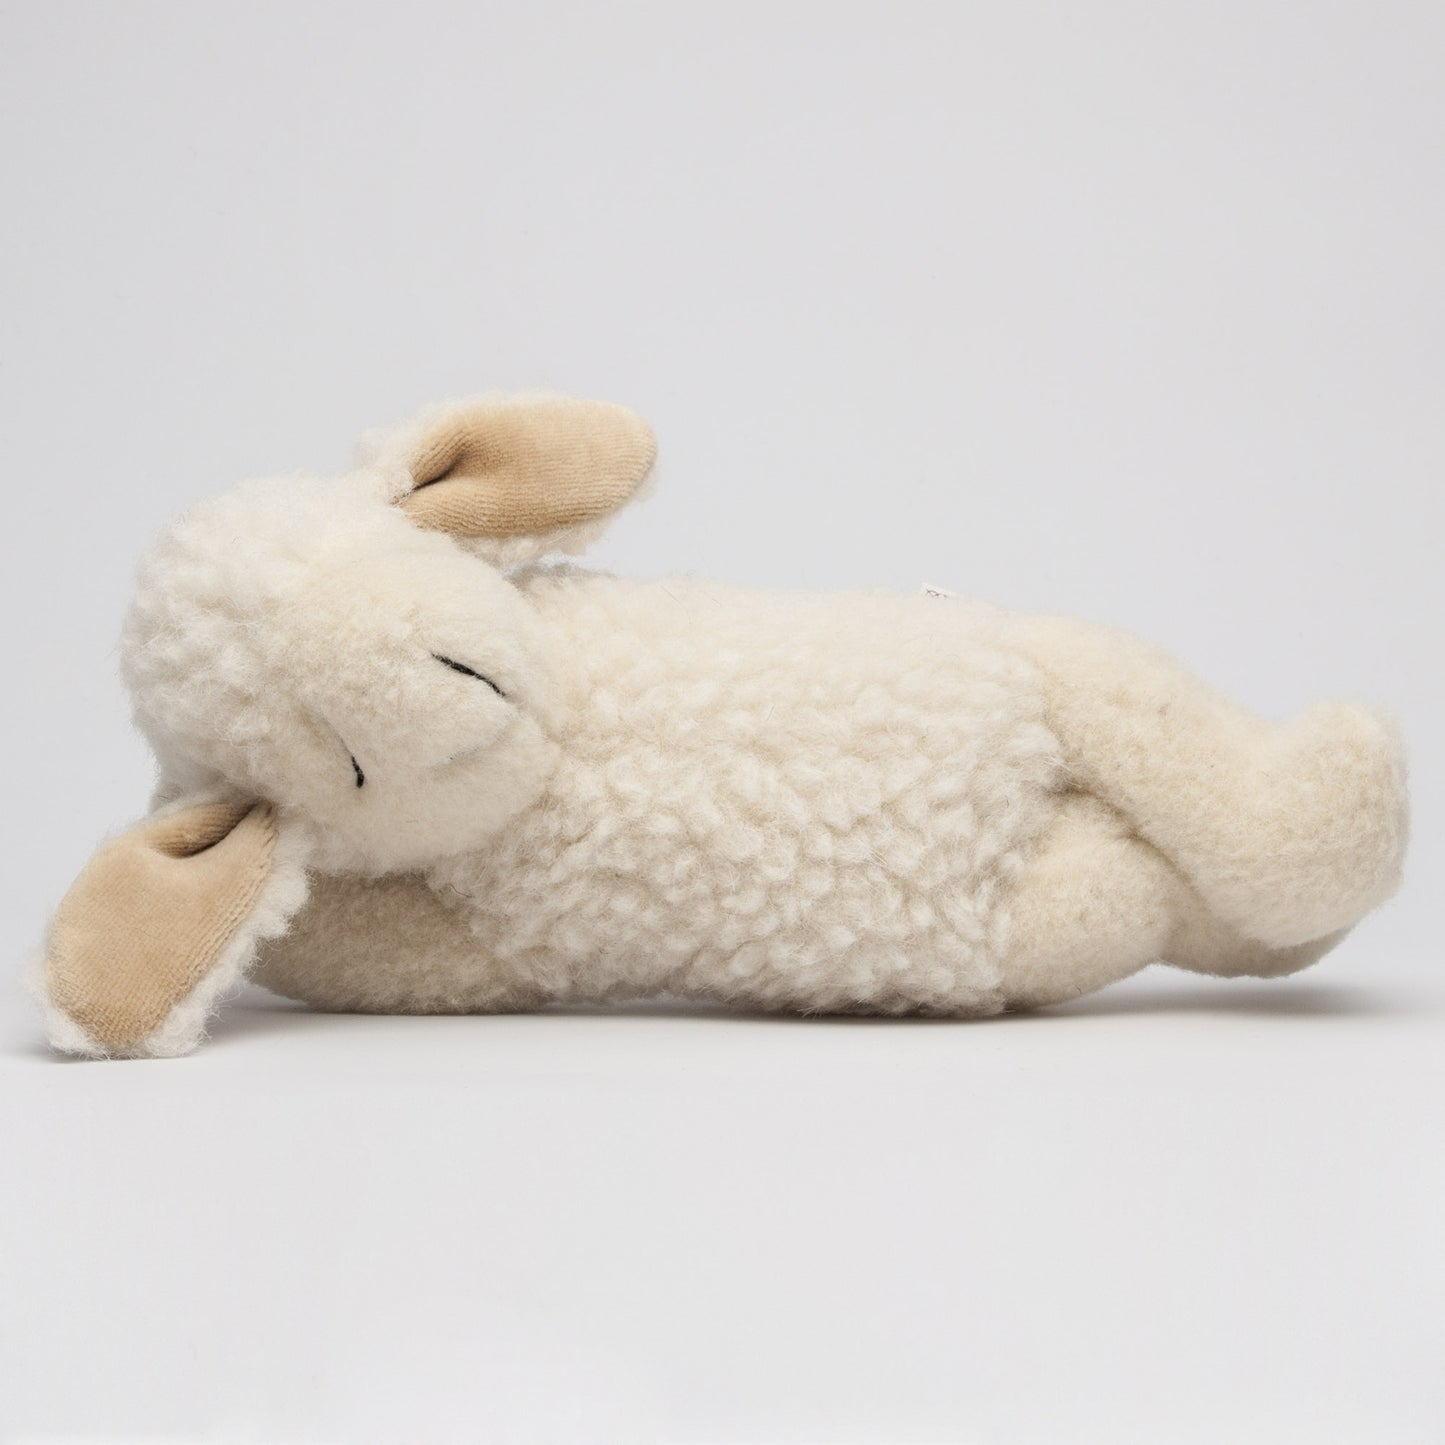 Spieltier - Schaf träumend